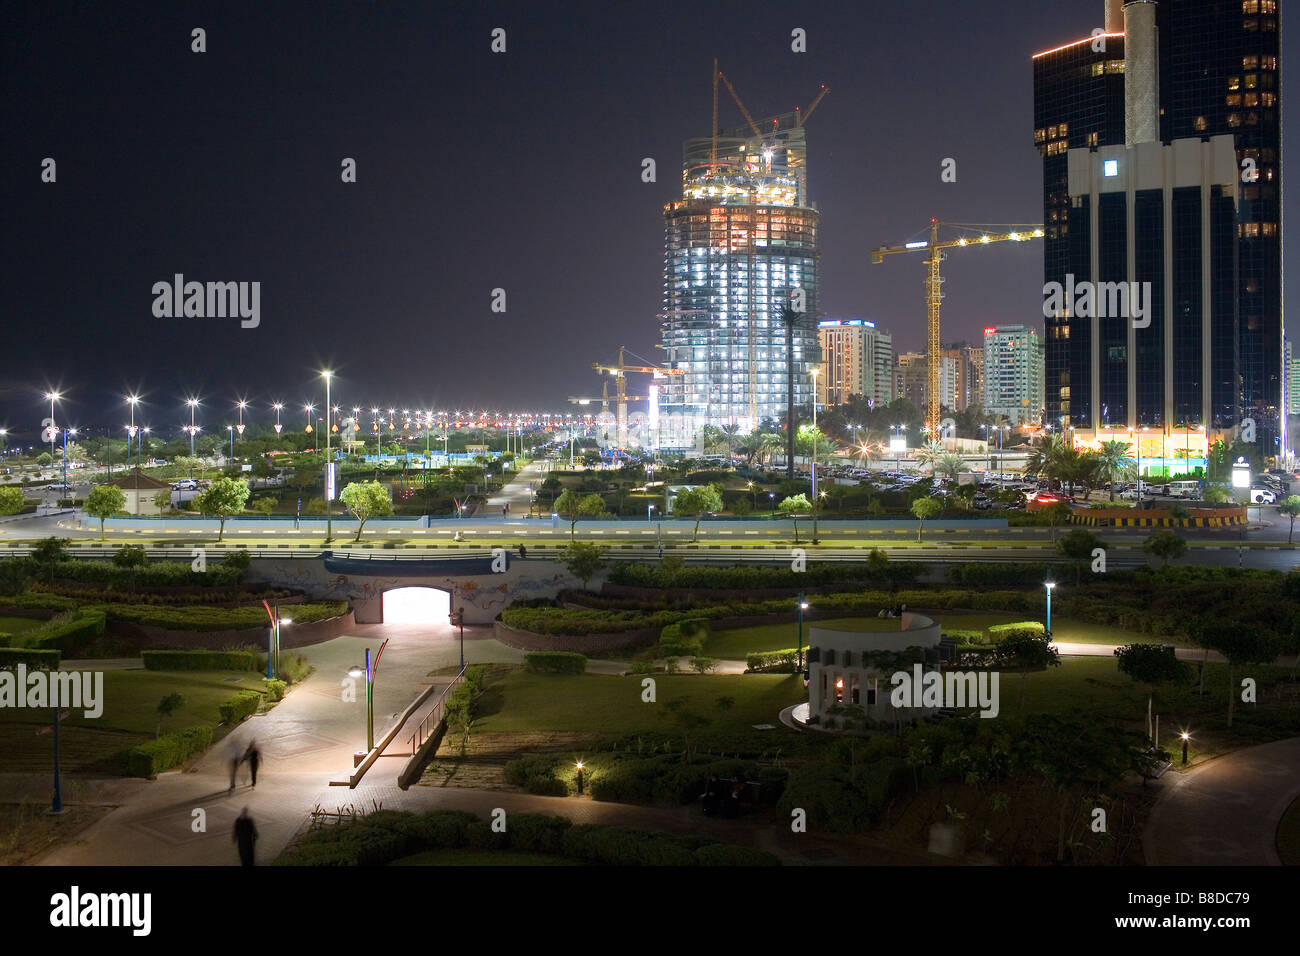 Una vista nocturna en Abu Dhabi Foto de stock